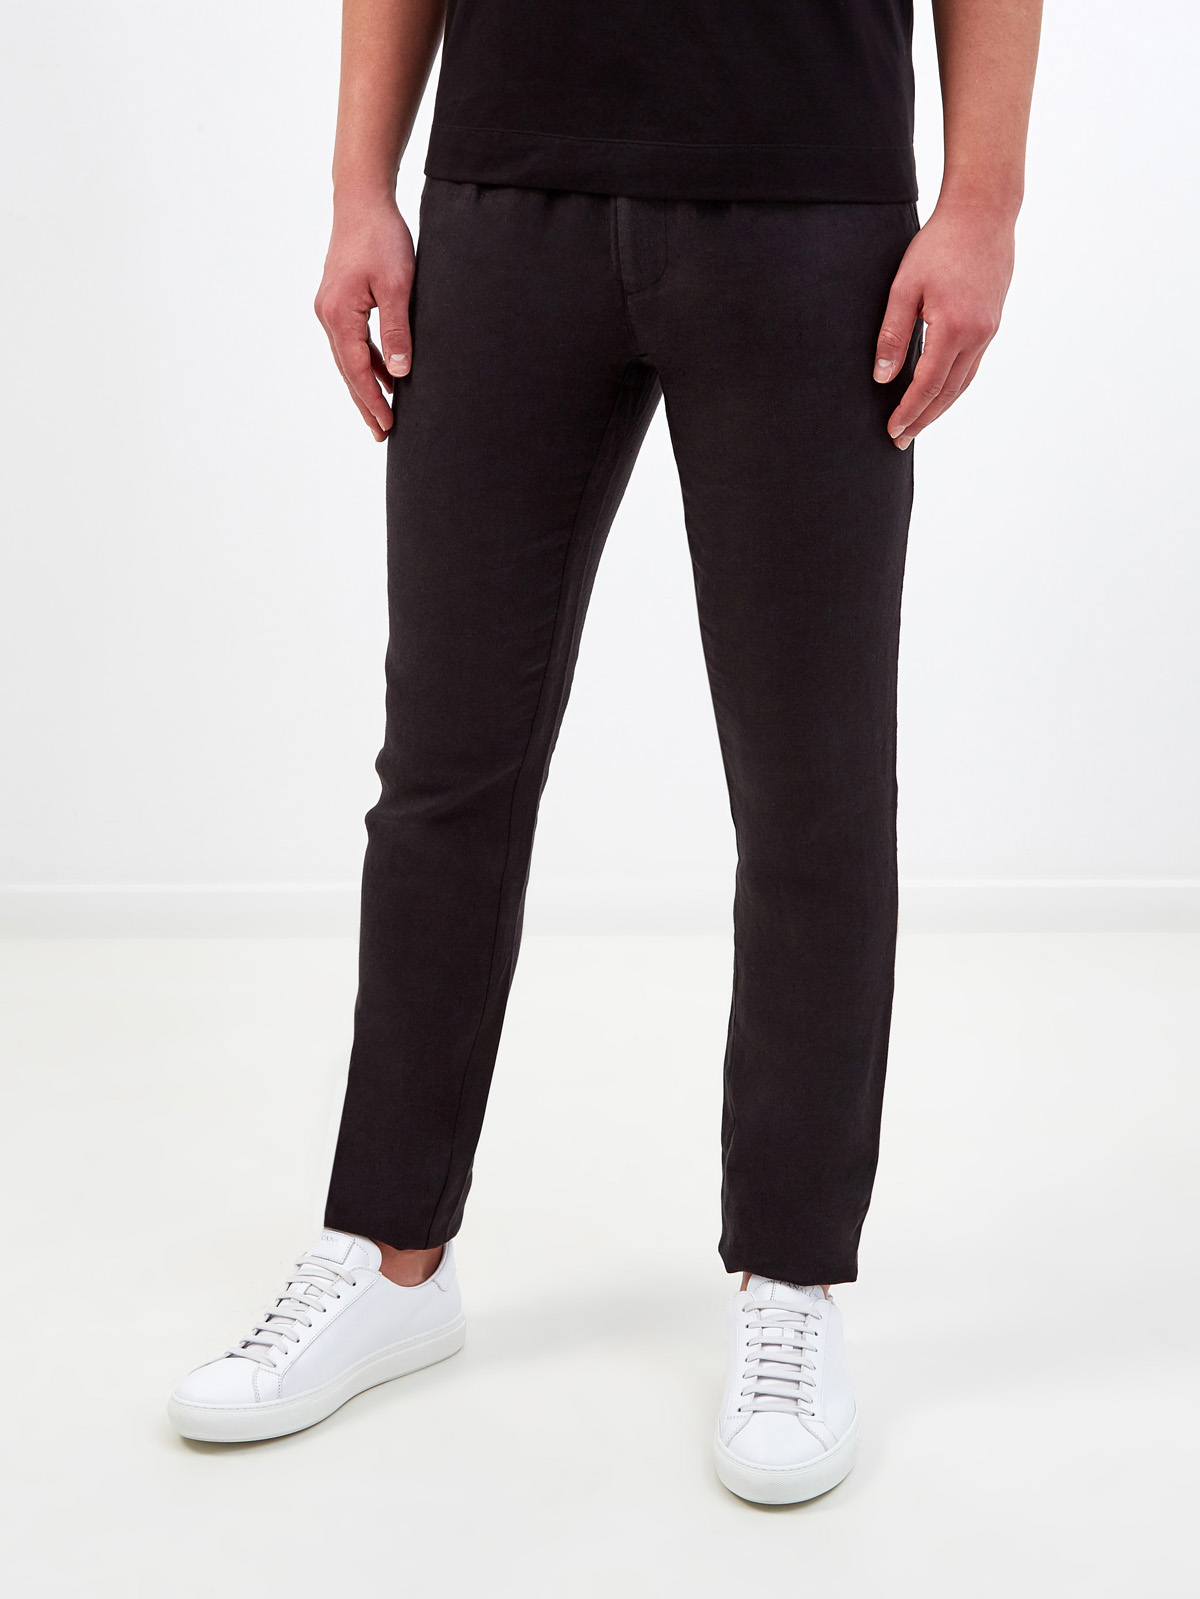 Однотонные брюки из дышащей льняной ткани CUDGI, цвет черный, размер M;L;XL;2XL;S - фото 3